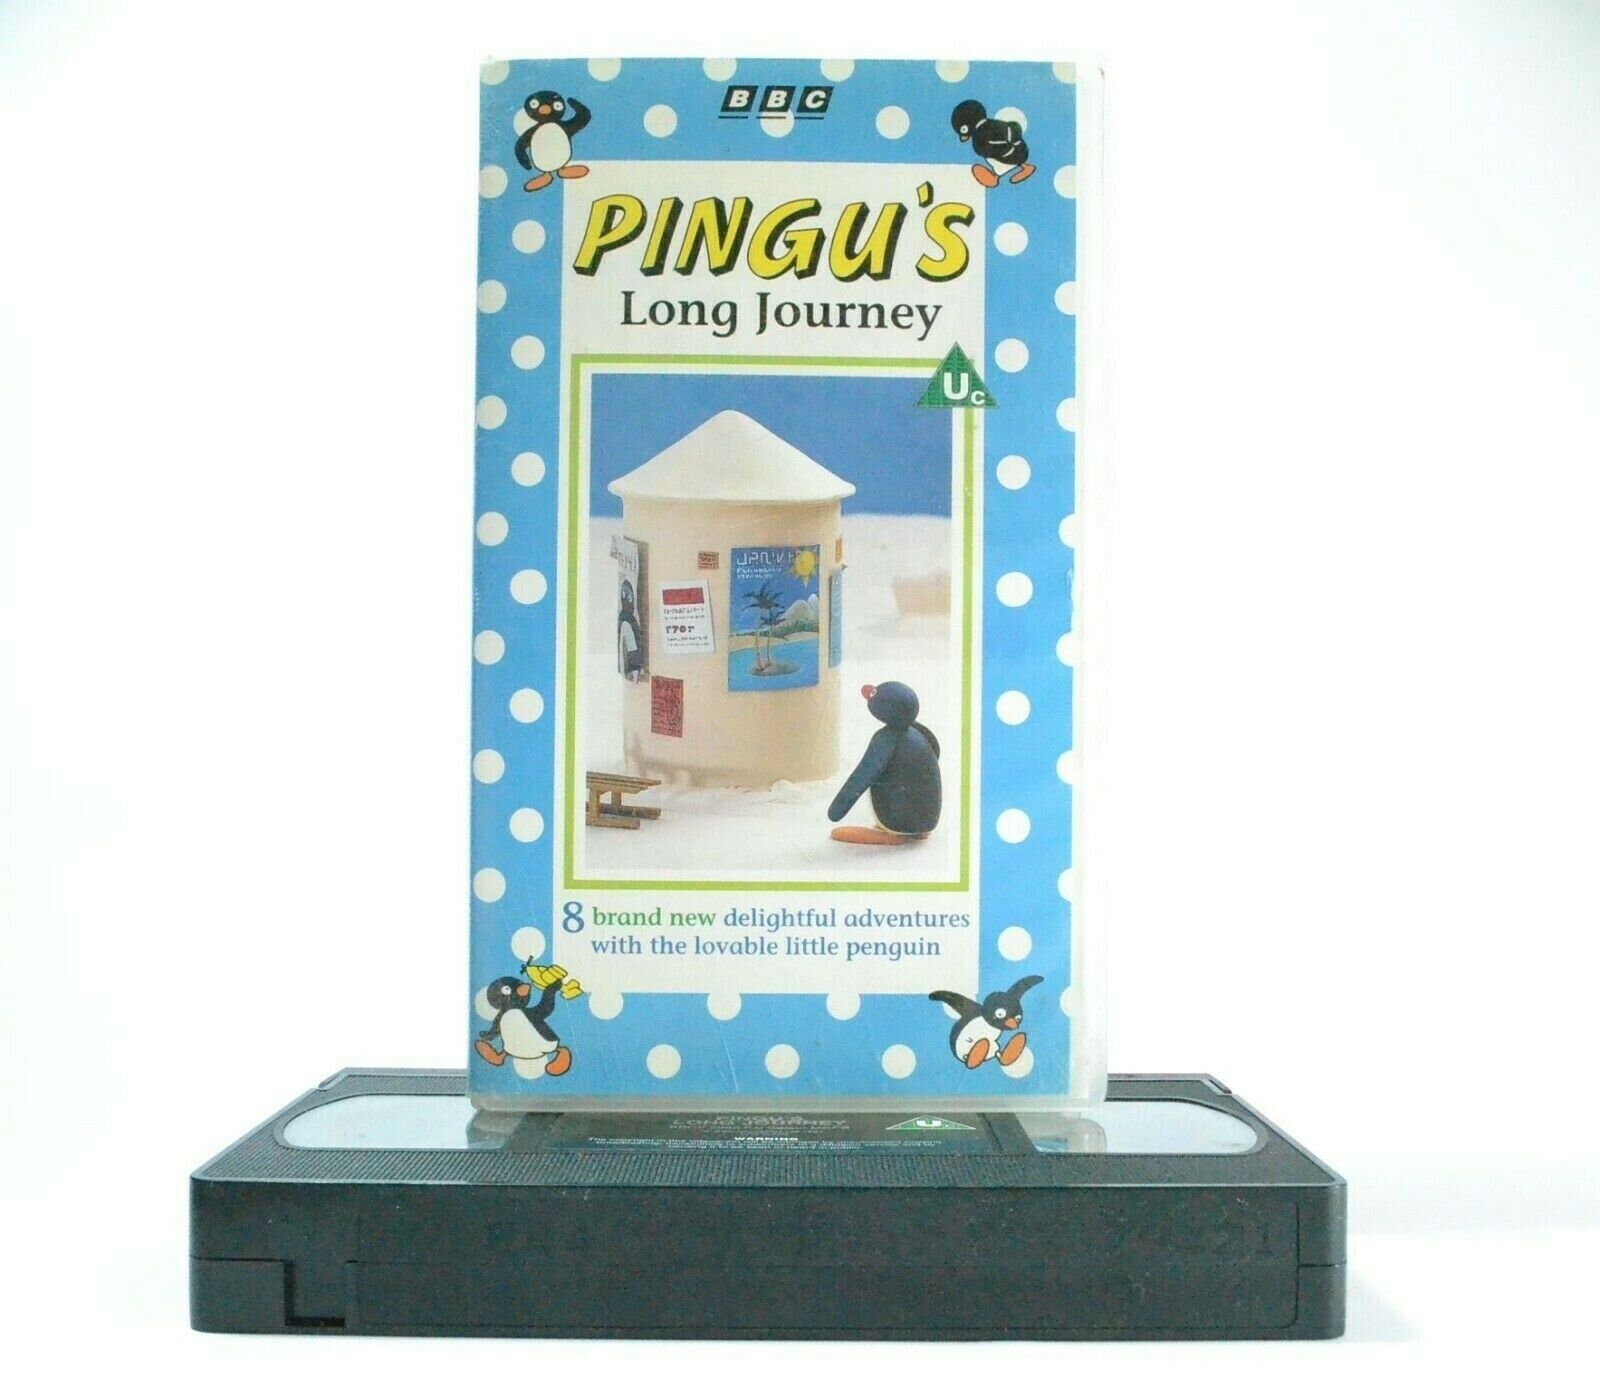 Pingu: Long Journey - BBC Children's Series - Famous Little Penguin - Pal VHS-